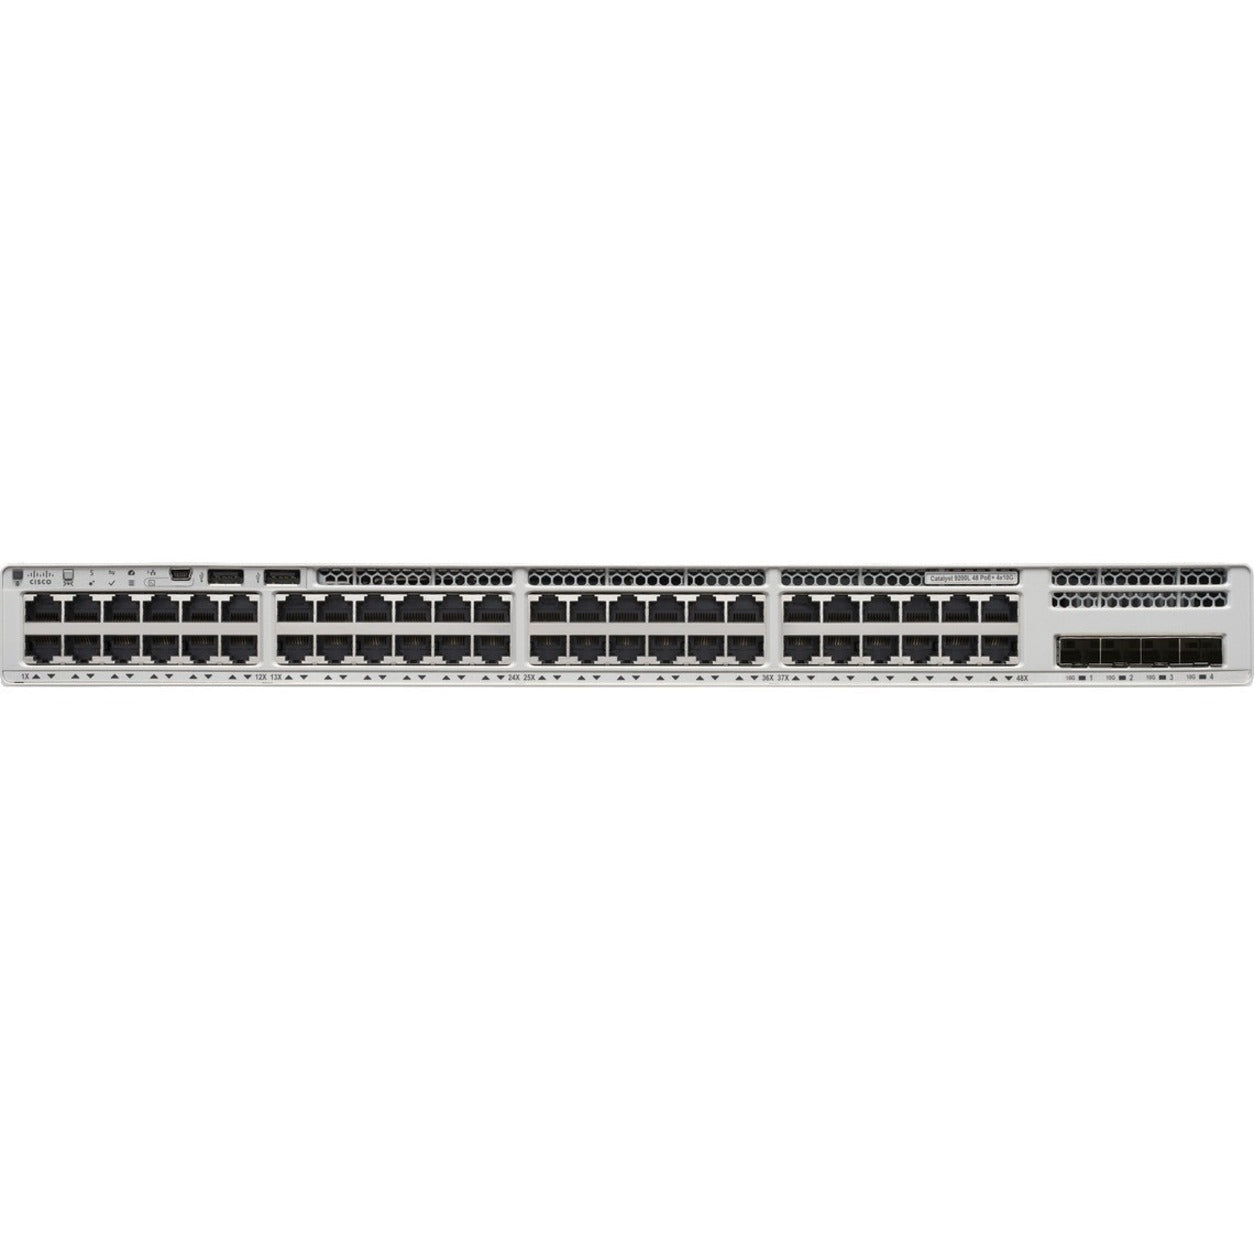 Cisco C9200L-48PL-4G-E Catalyst 9200L 48-Port Partial PoE+ Switch, Network Essentials